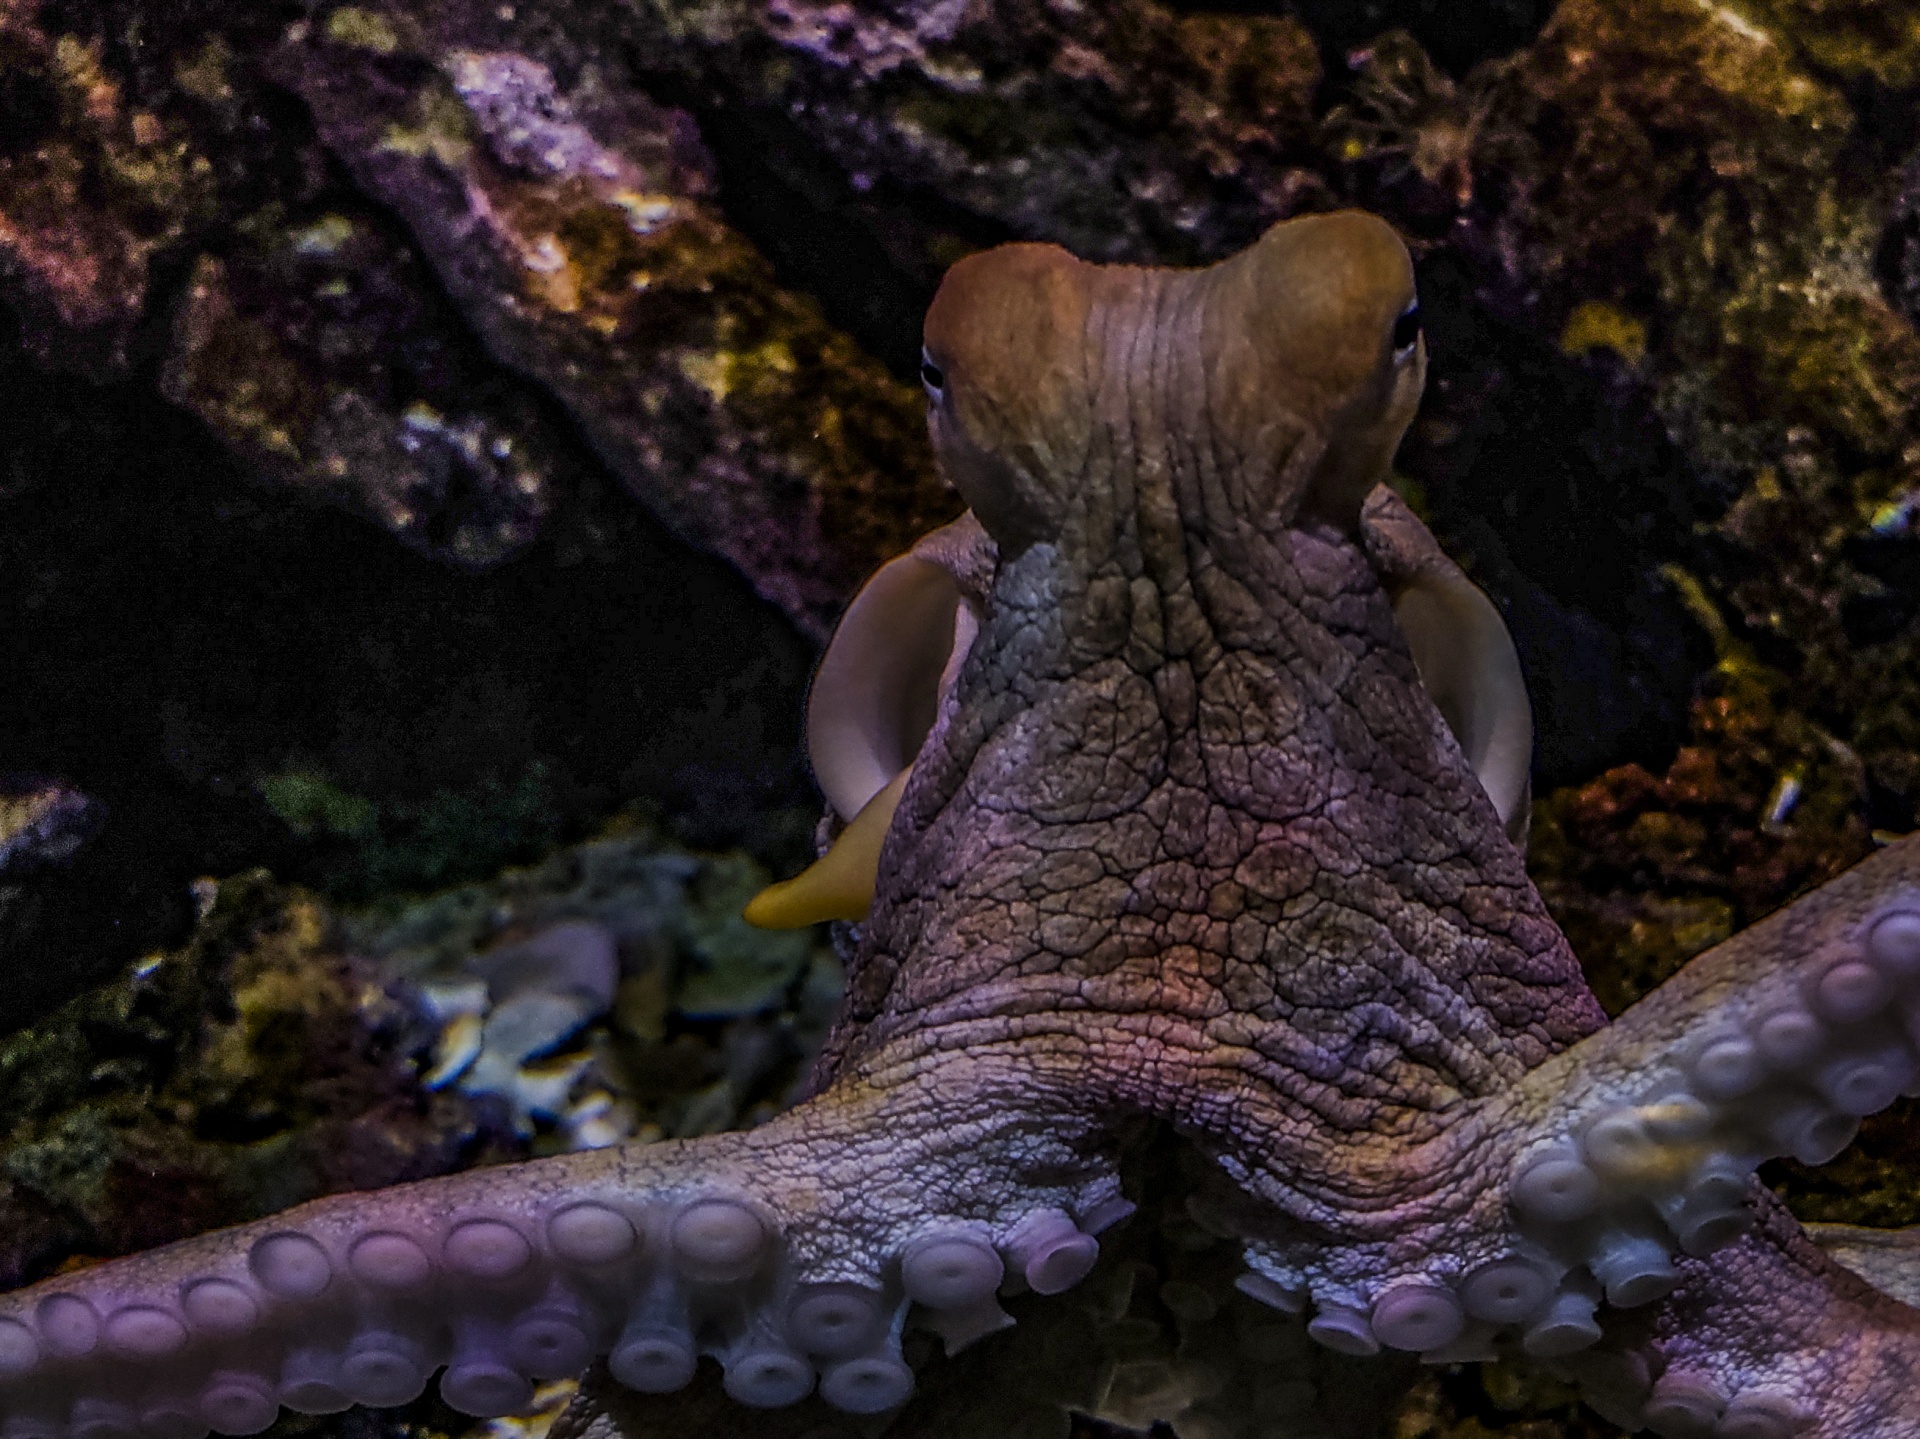 Octopus Looking At Camera